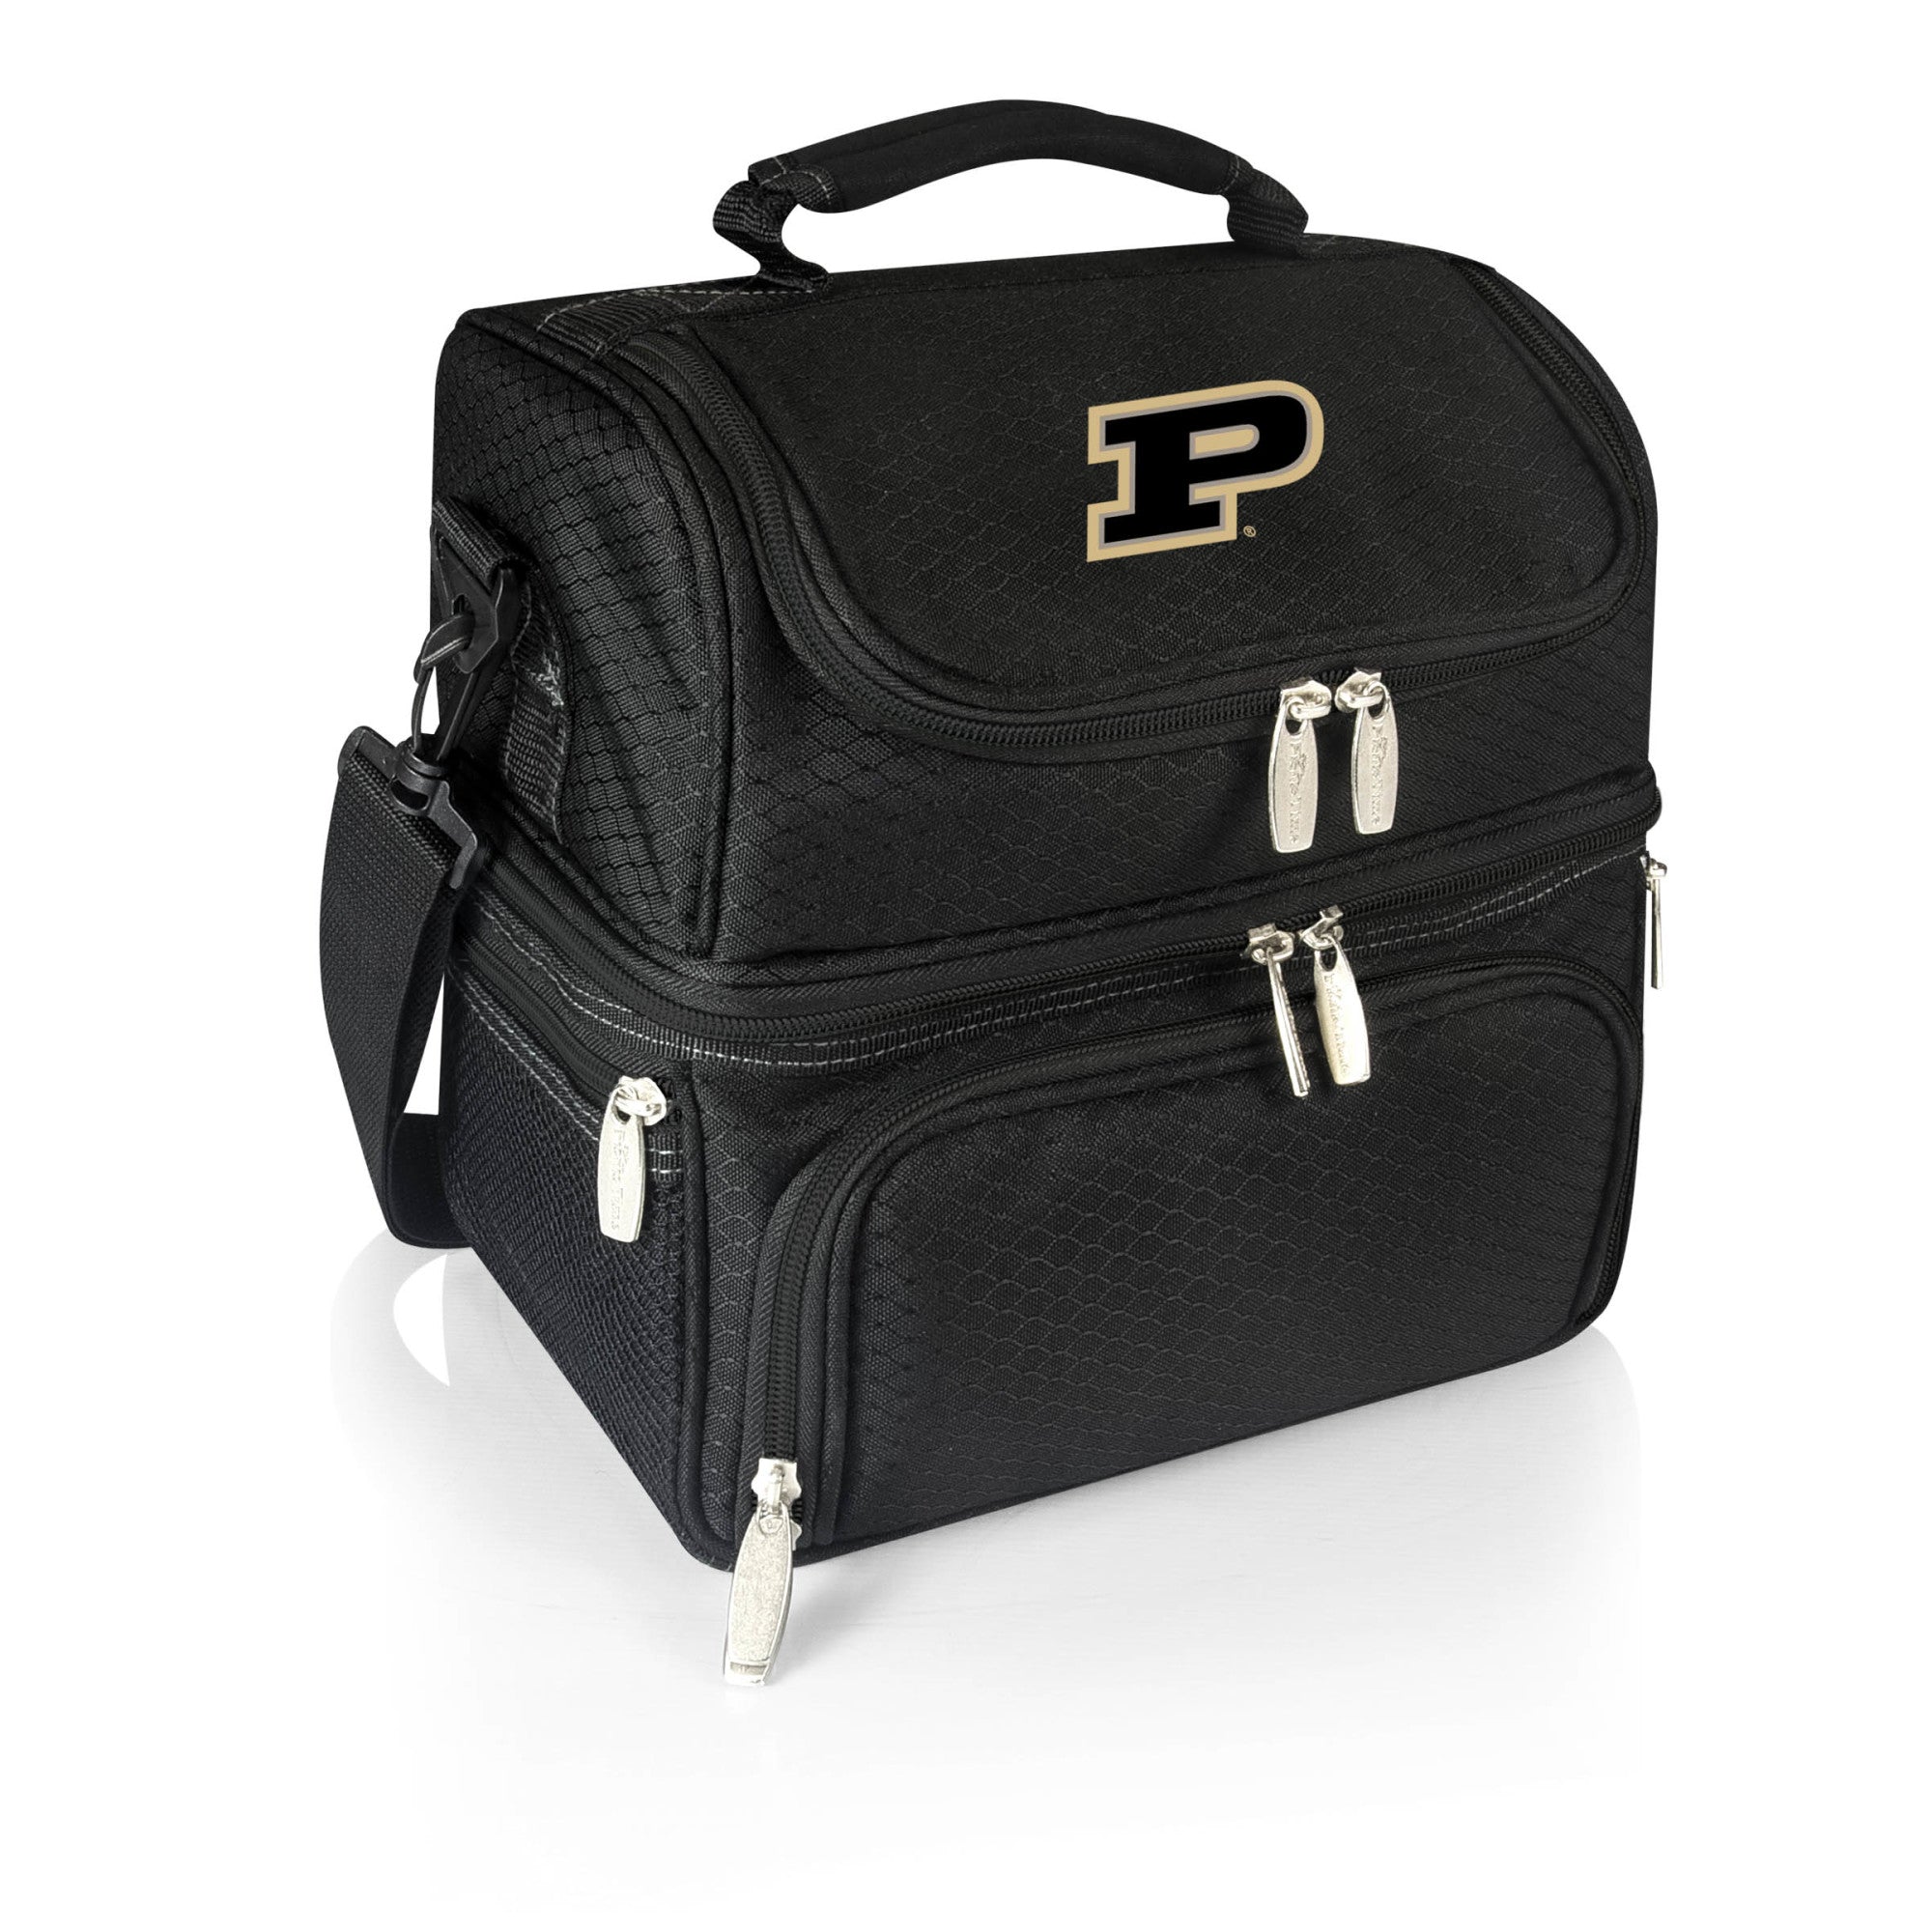 Purdue Boilermakers - Pranzo Lunch Cooler Bag, (Black)